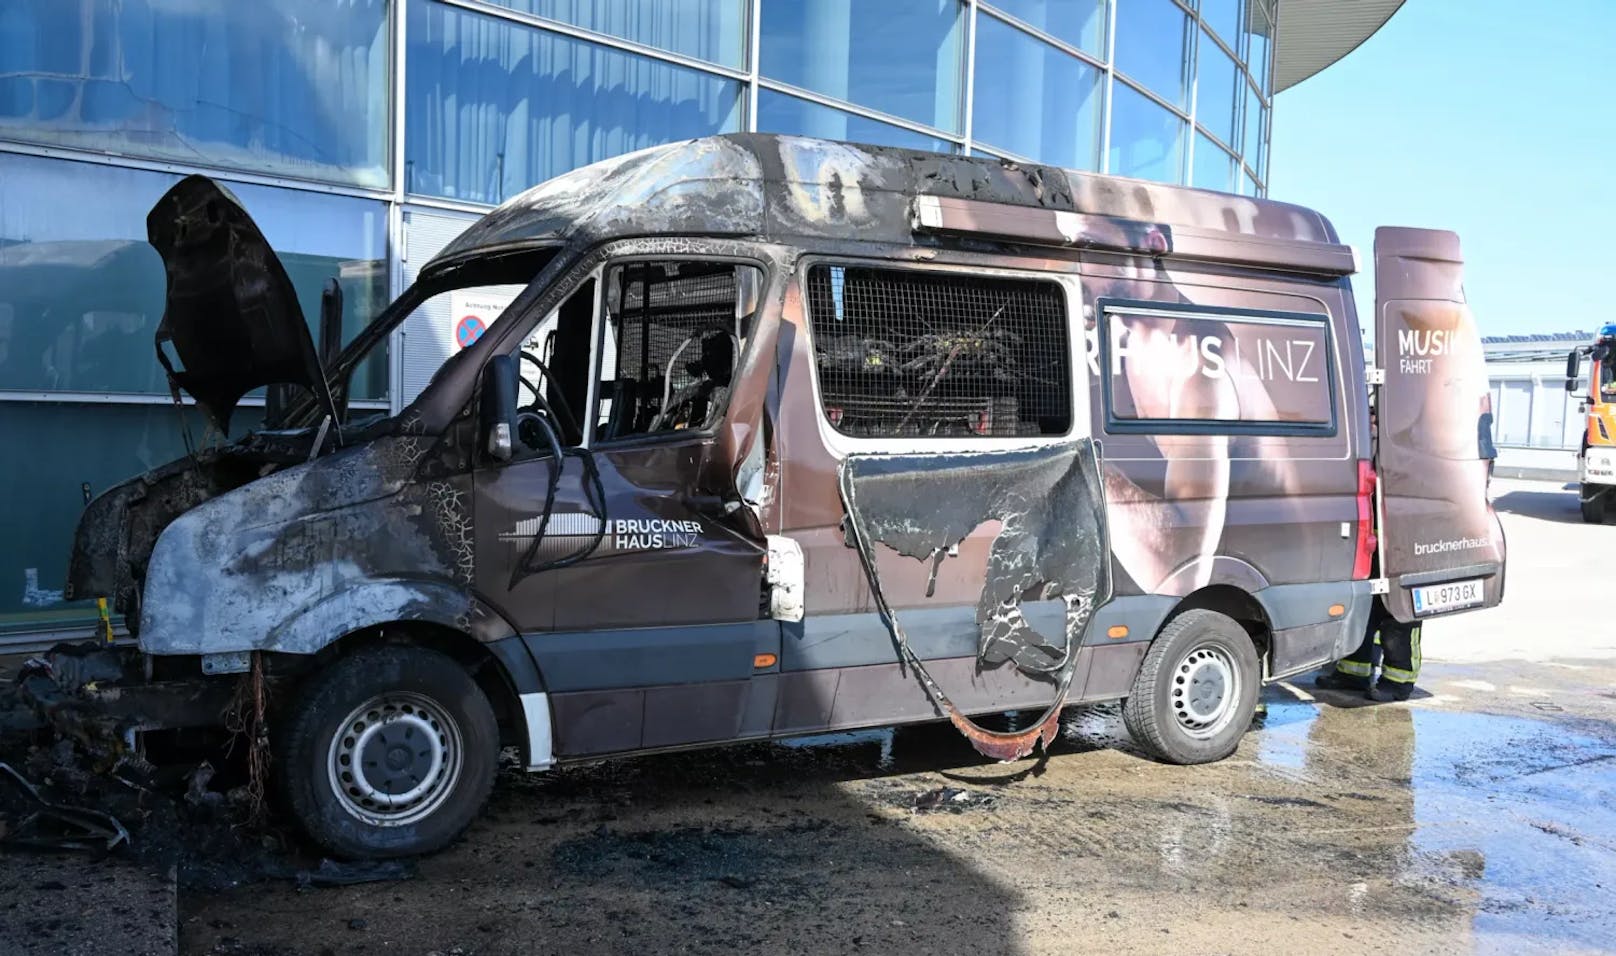 Fahrzeug brennt neben Konzerthalle – Feuerwehr rückt an